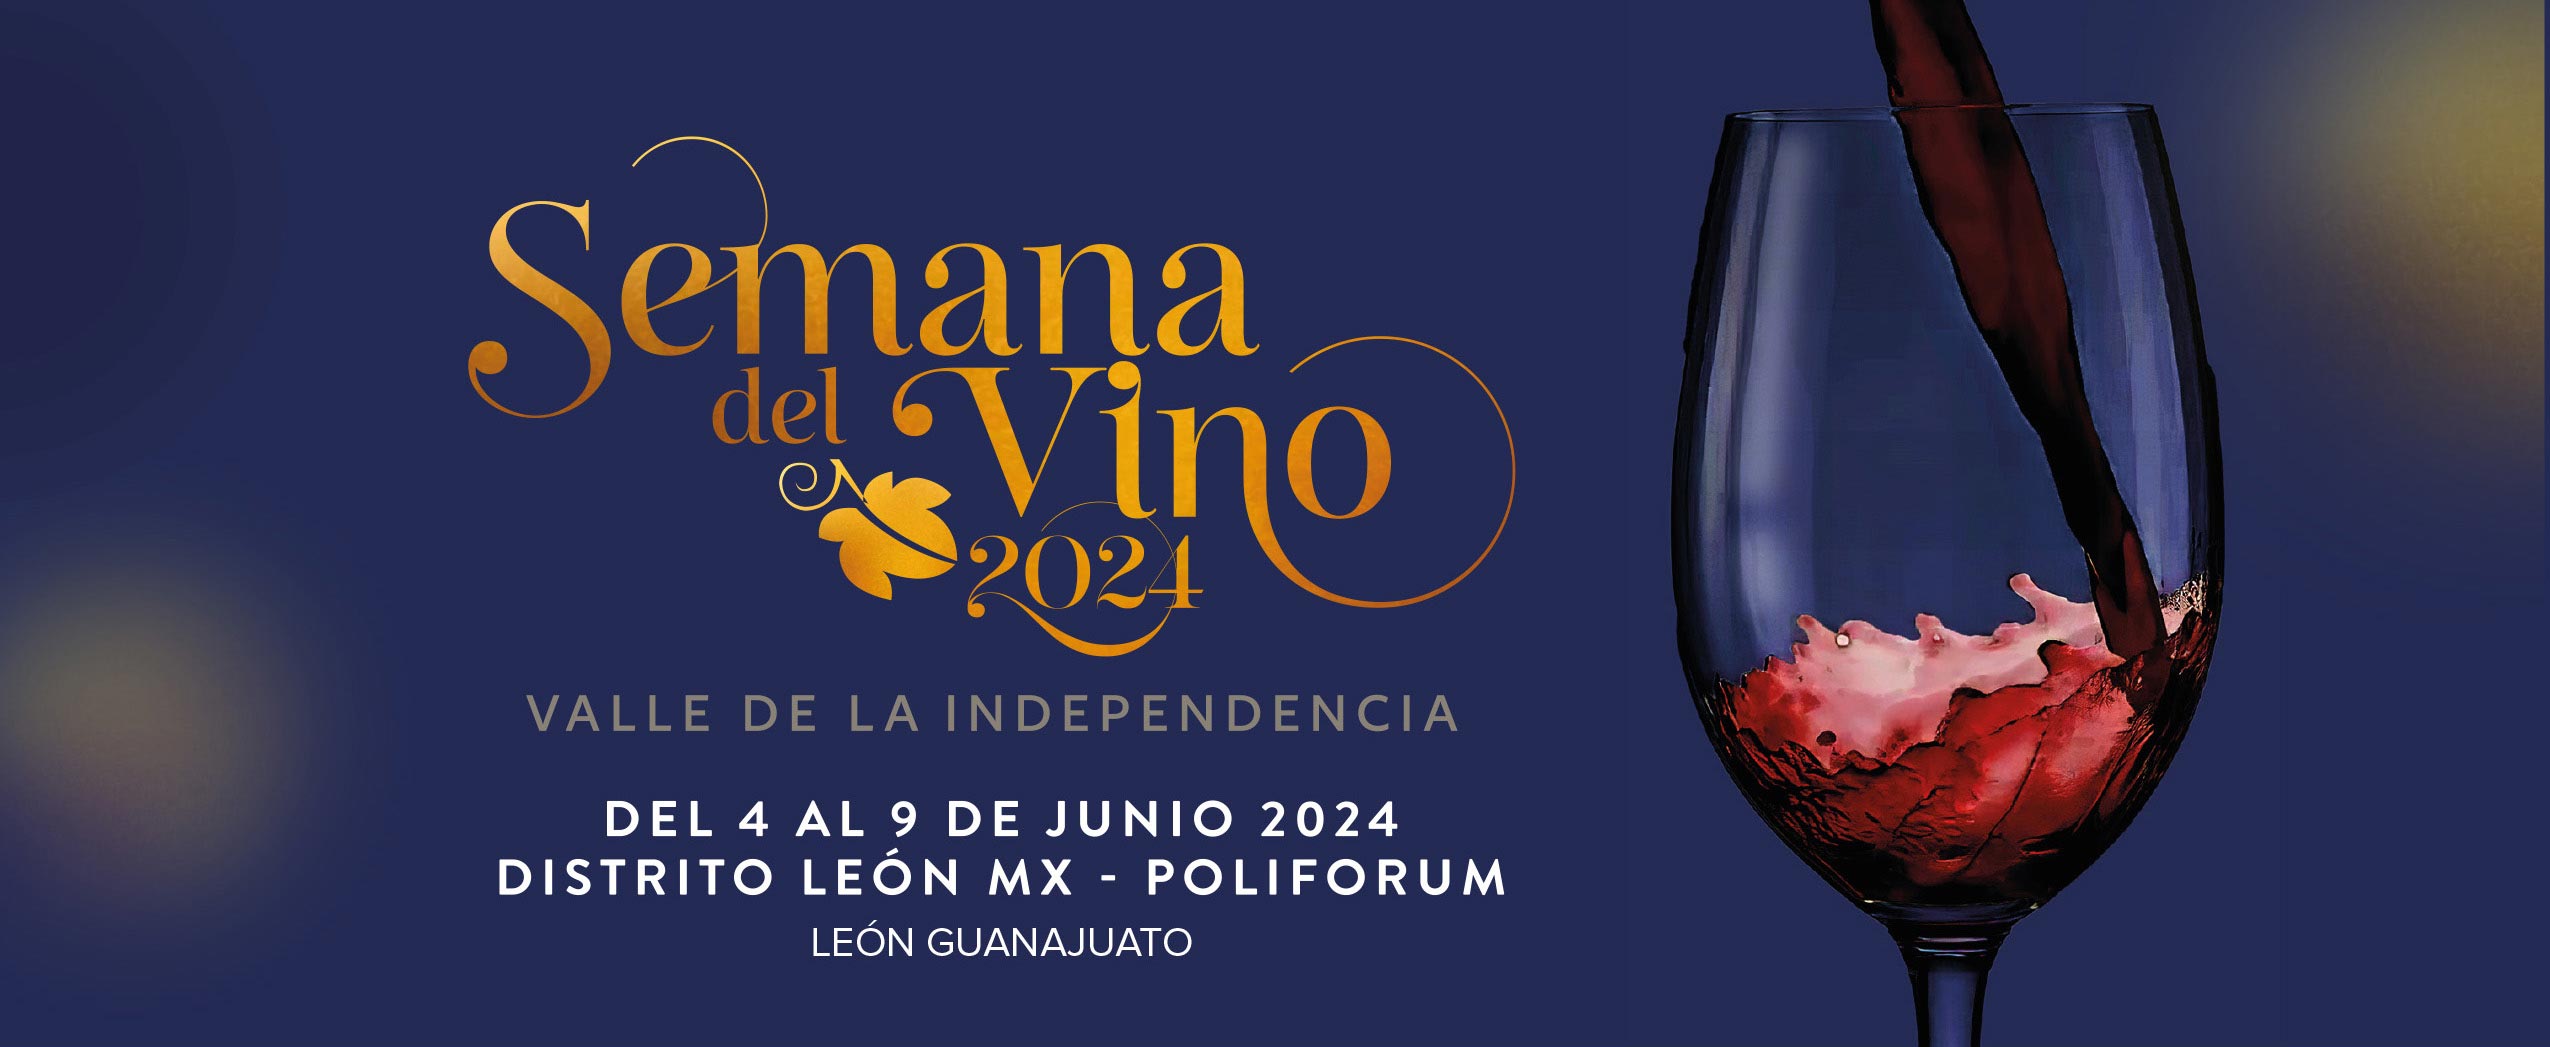 Semana del vino 2024 en Guanajuato